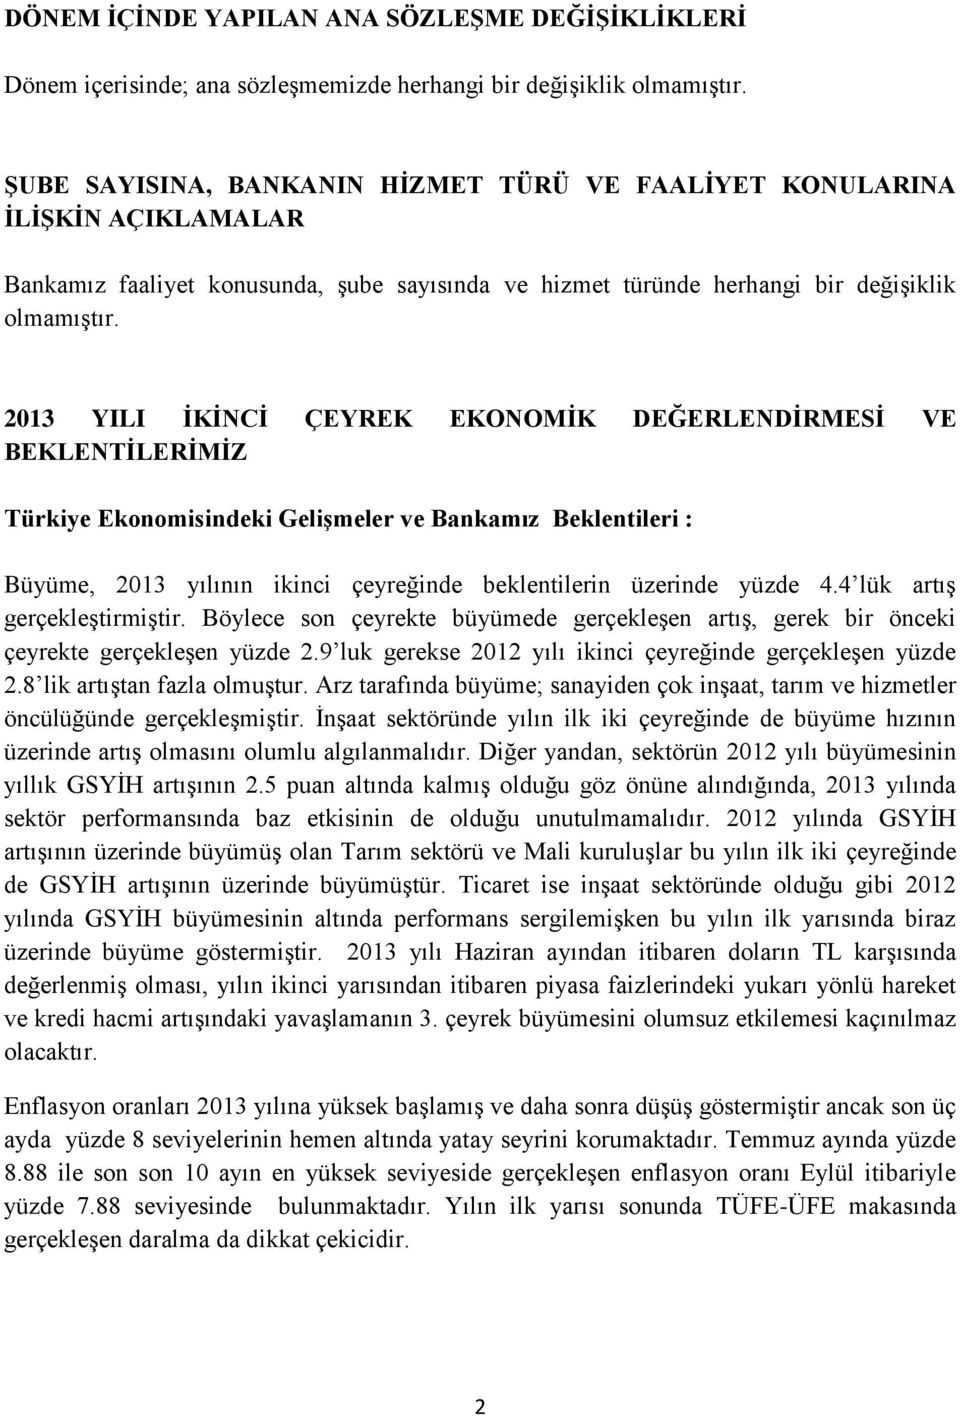 2013 YILI İKİNCİ ÇEYREK EKONOMİK DEĞERLENDİRMESİ VE BEKLENTİLERİMİZ Türkiye Ekonomisindeki Gelişmeler ve Bankamız Beklentileri : Büyüme, 2013 yılının ikinci çeyreğinde beklentilerin üzerinde yüzde 4.